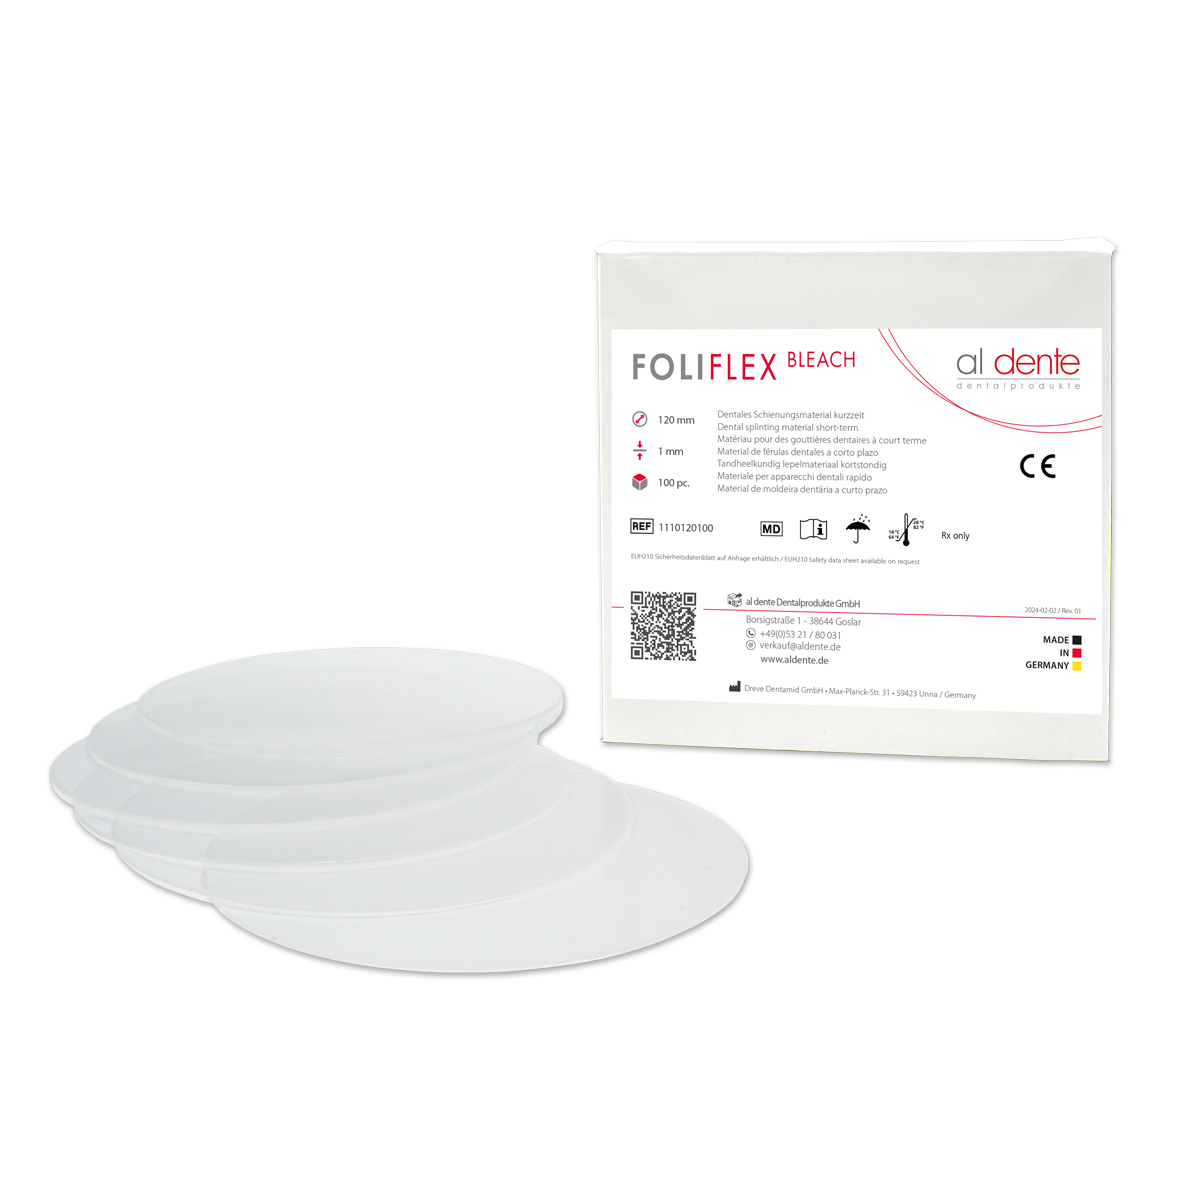 FOLIFLEX bleach, transparent, 1,0 mm, 100 St., Ø 120 mm